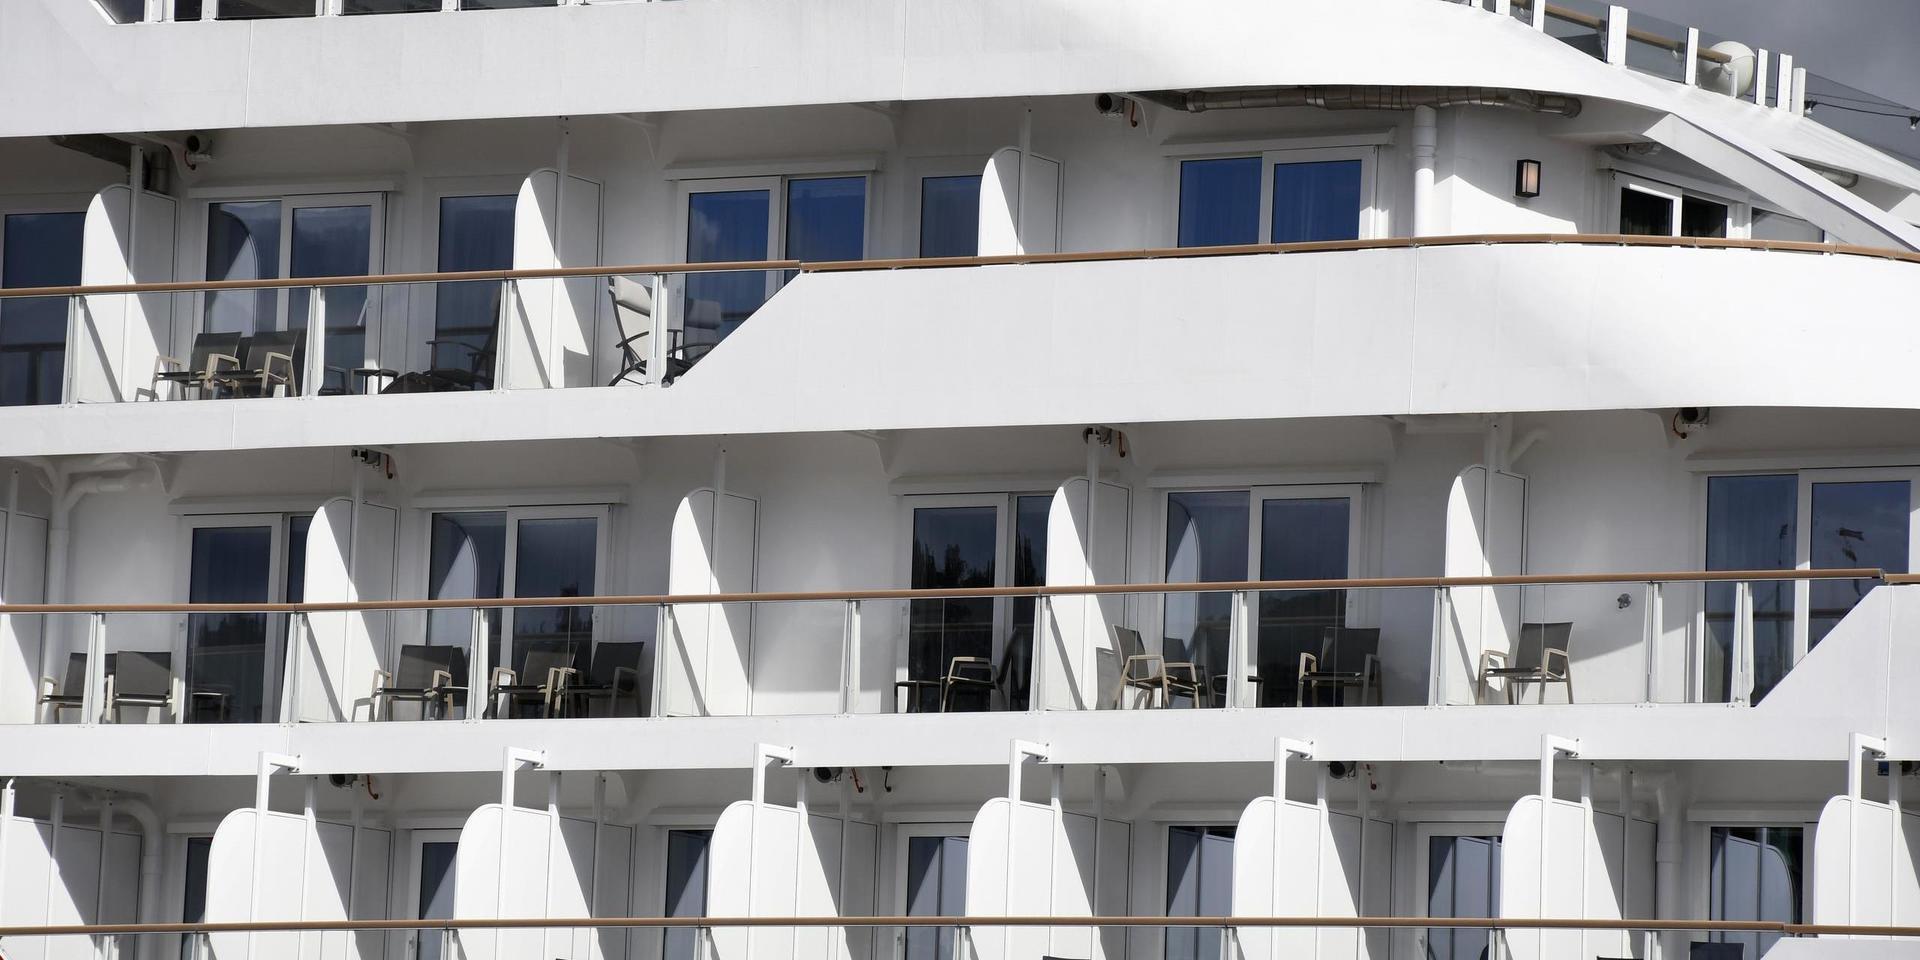 Coronautbrottet hos Hurtigruten har fått andra norska rederier att vidta åtgärder för att hindra smitta. Arkivbild.